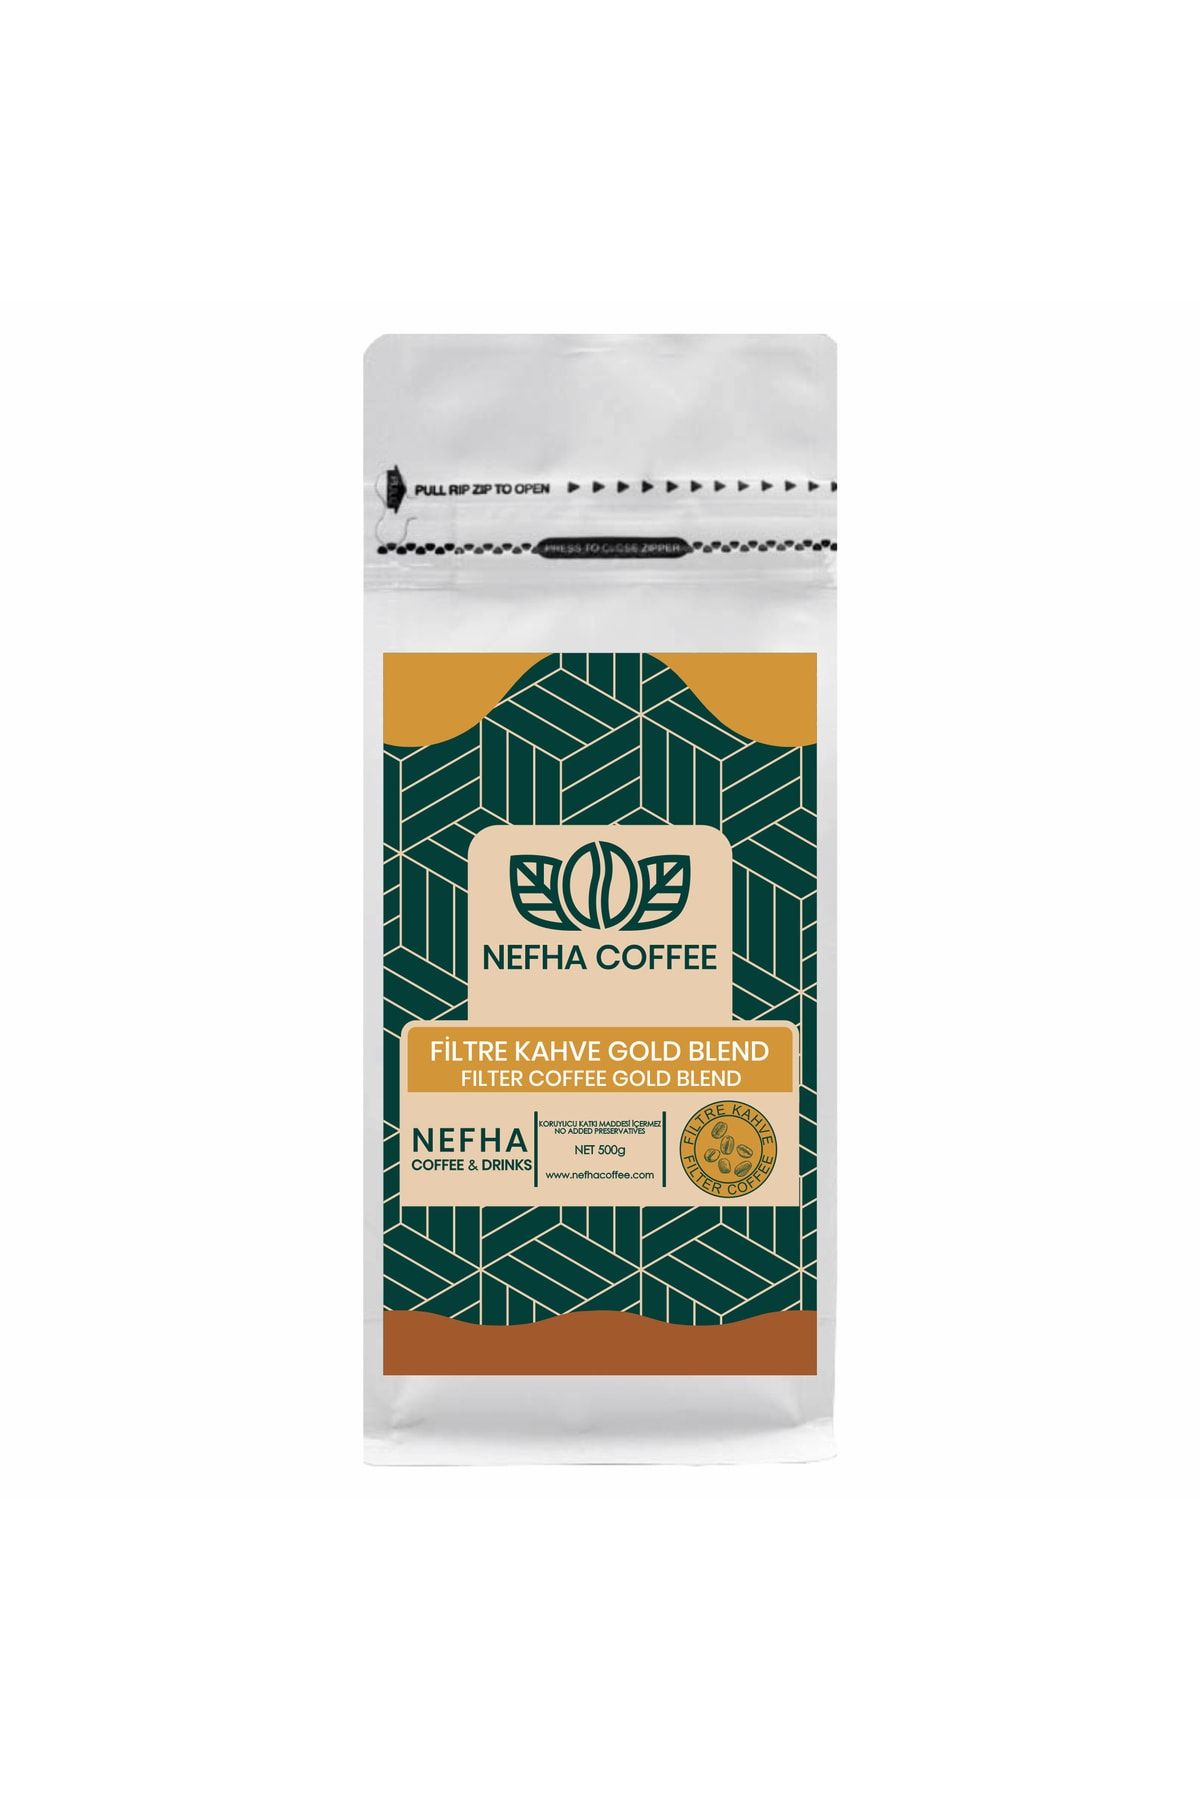 Nefha Coffee Gold Blend Filtre Kahve /500gr/